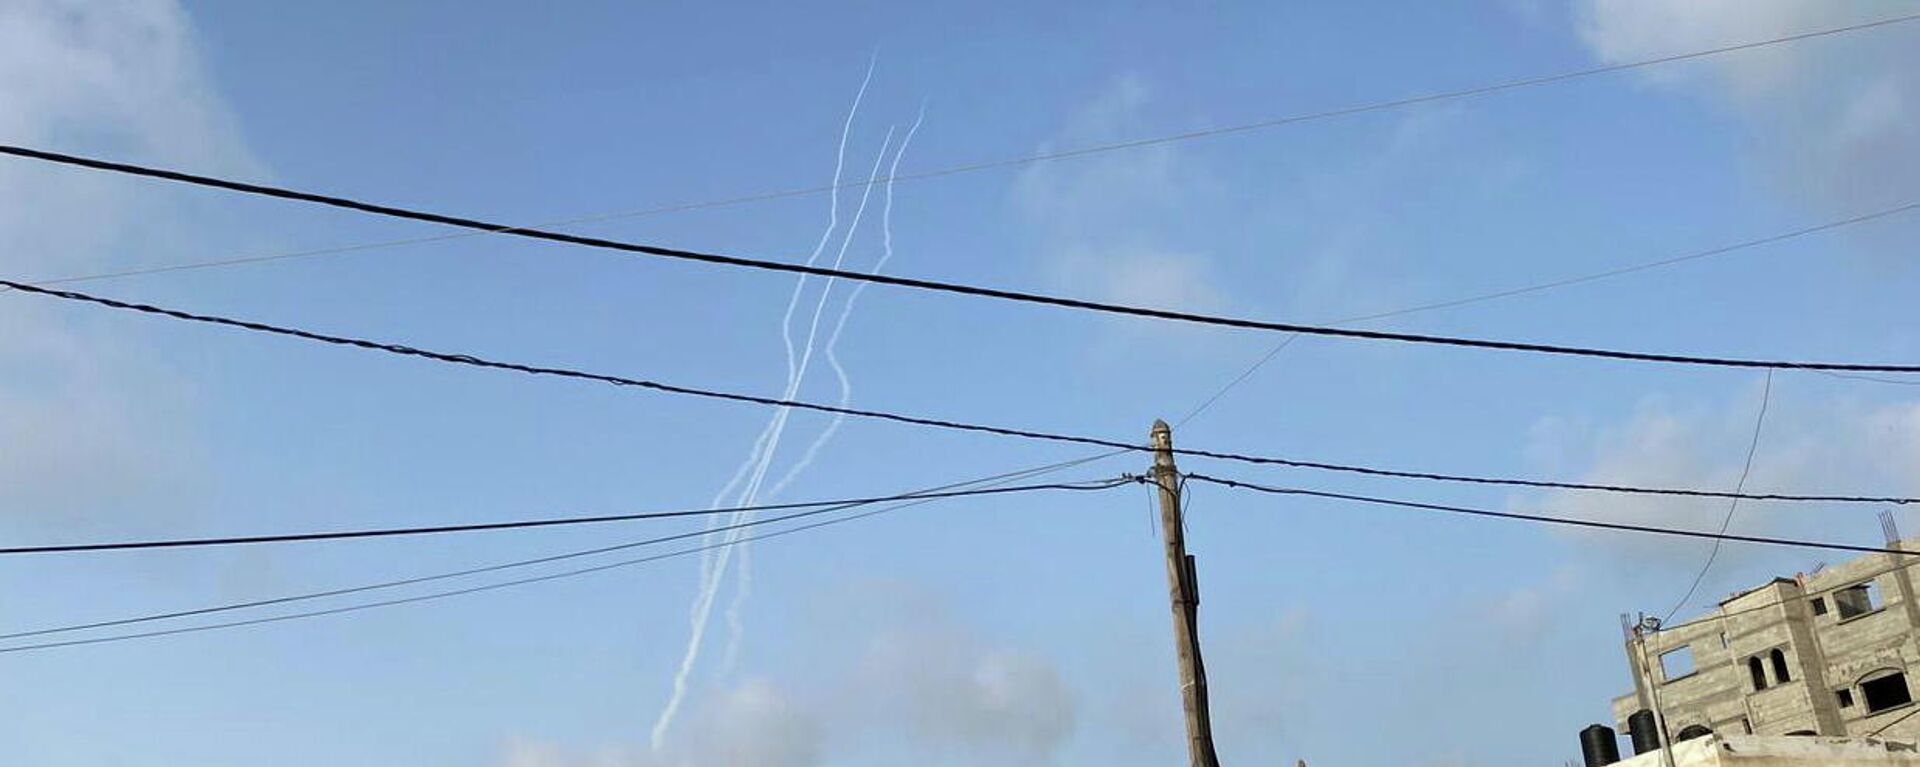 Lanzamiento de cohetes desde Gaza hacia Israel - Sputnik Mundo, 1920, 16.05.2021